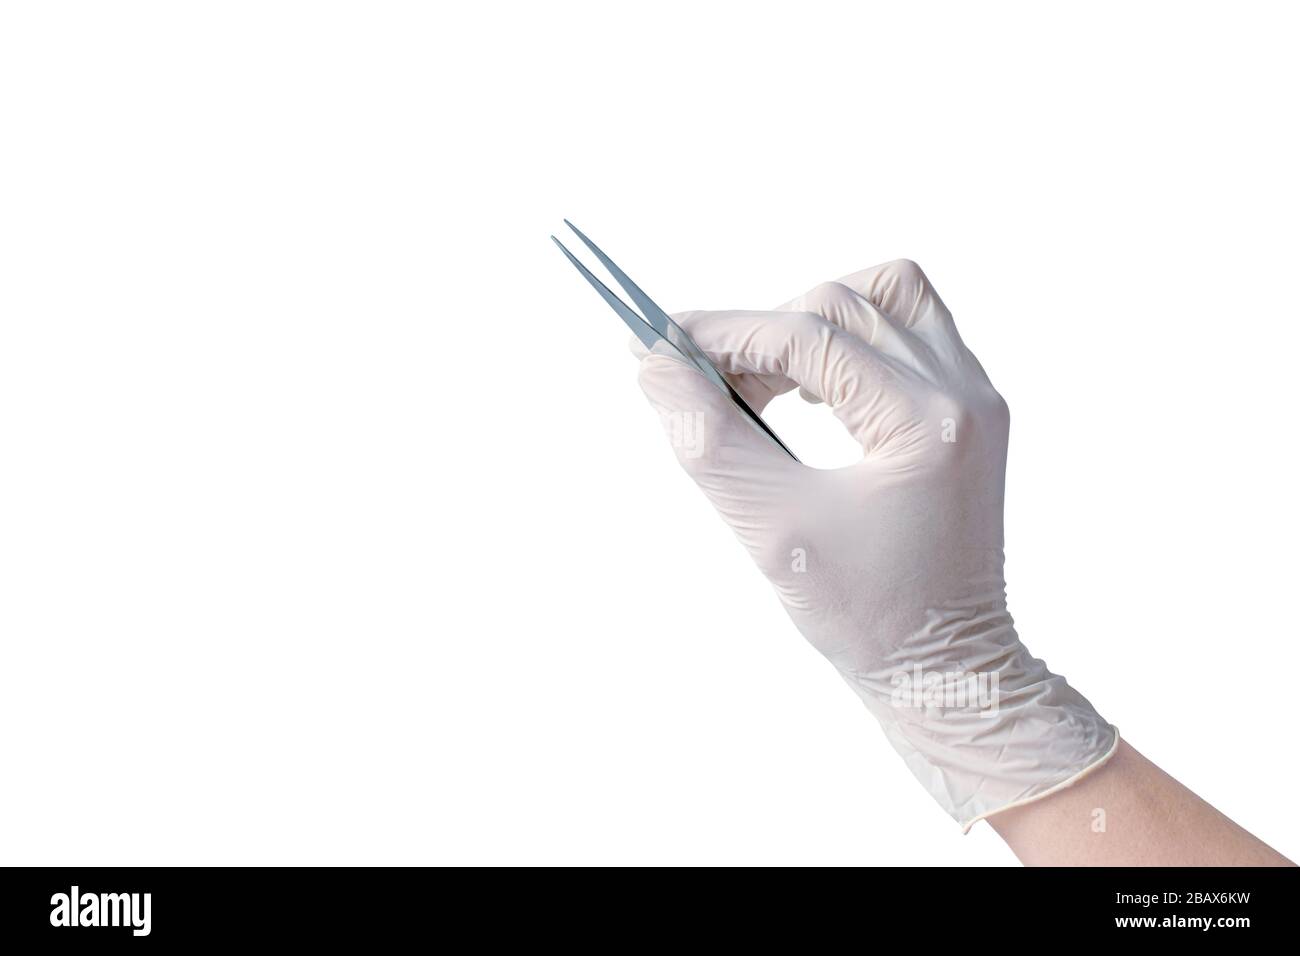 La main femelle portant un gant médical maintient des brucelles métalliques isolées sur blanc Banque D'Images